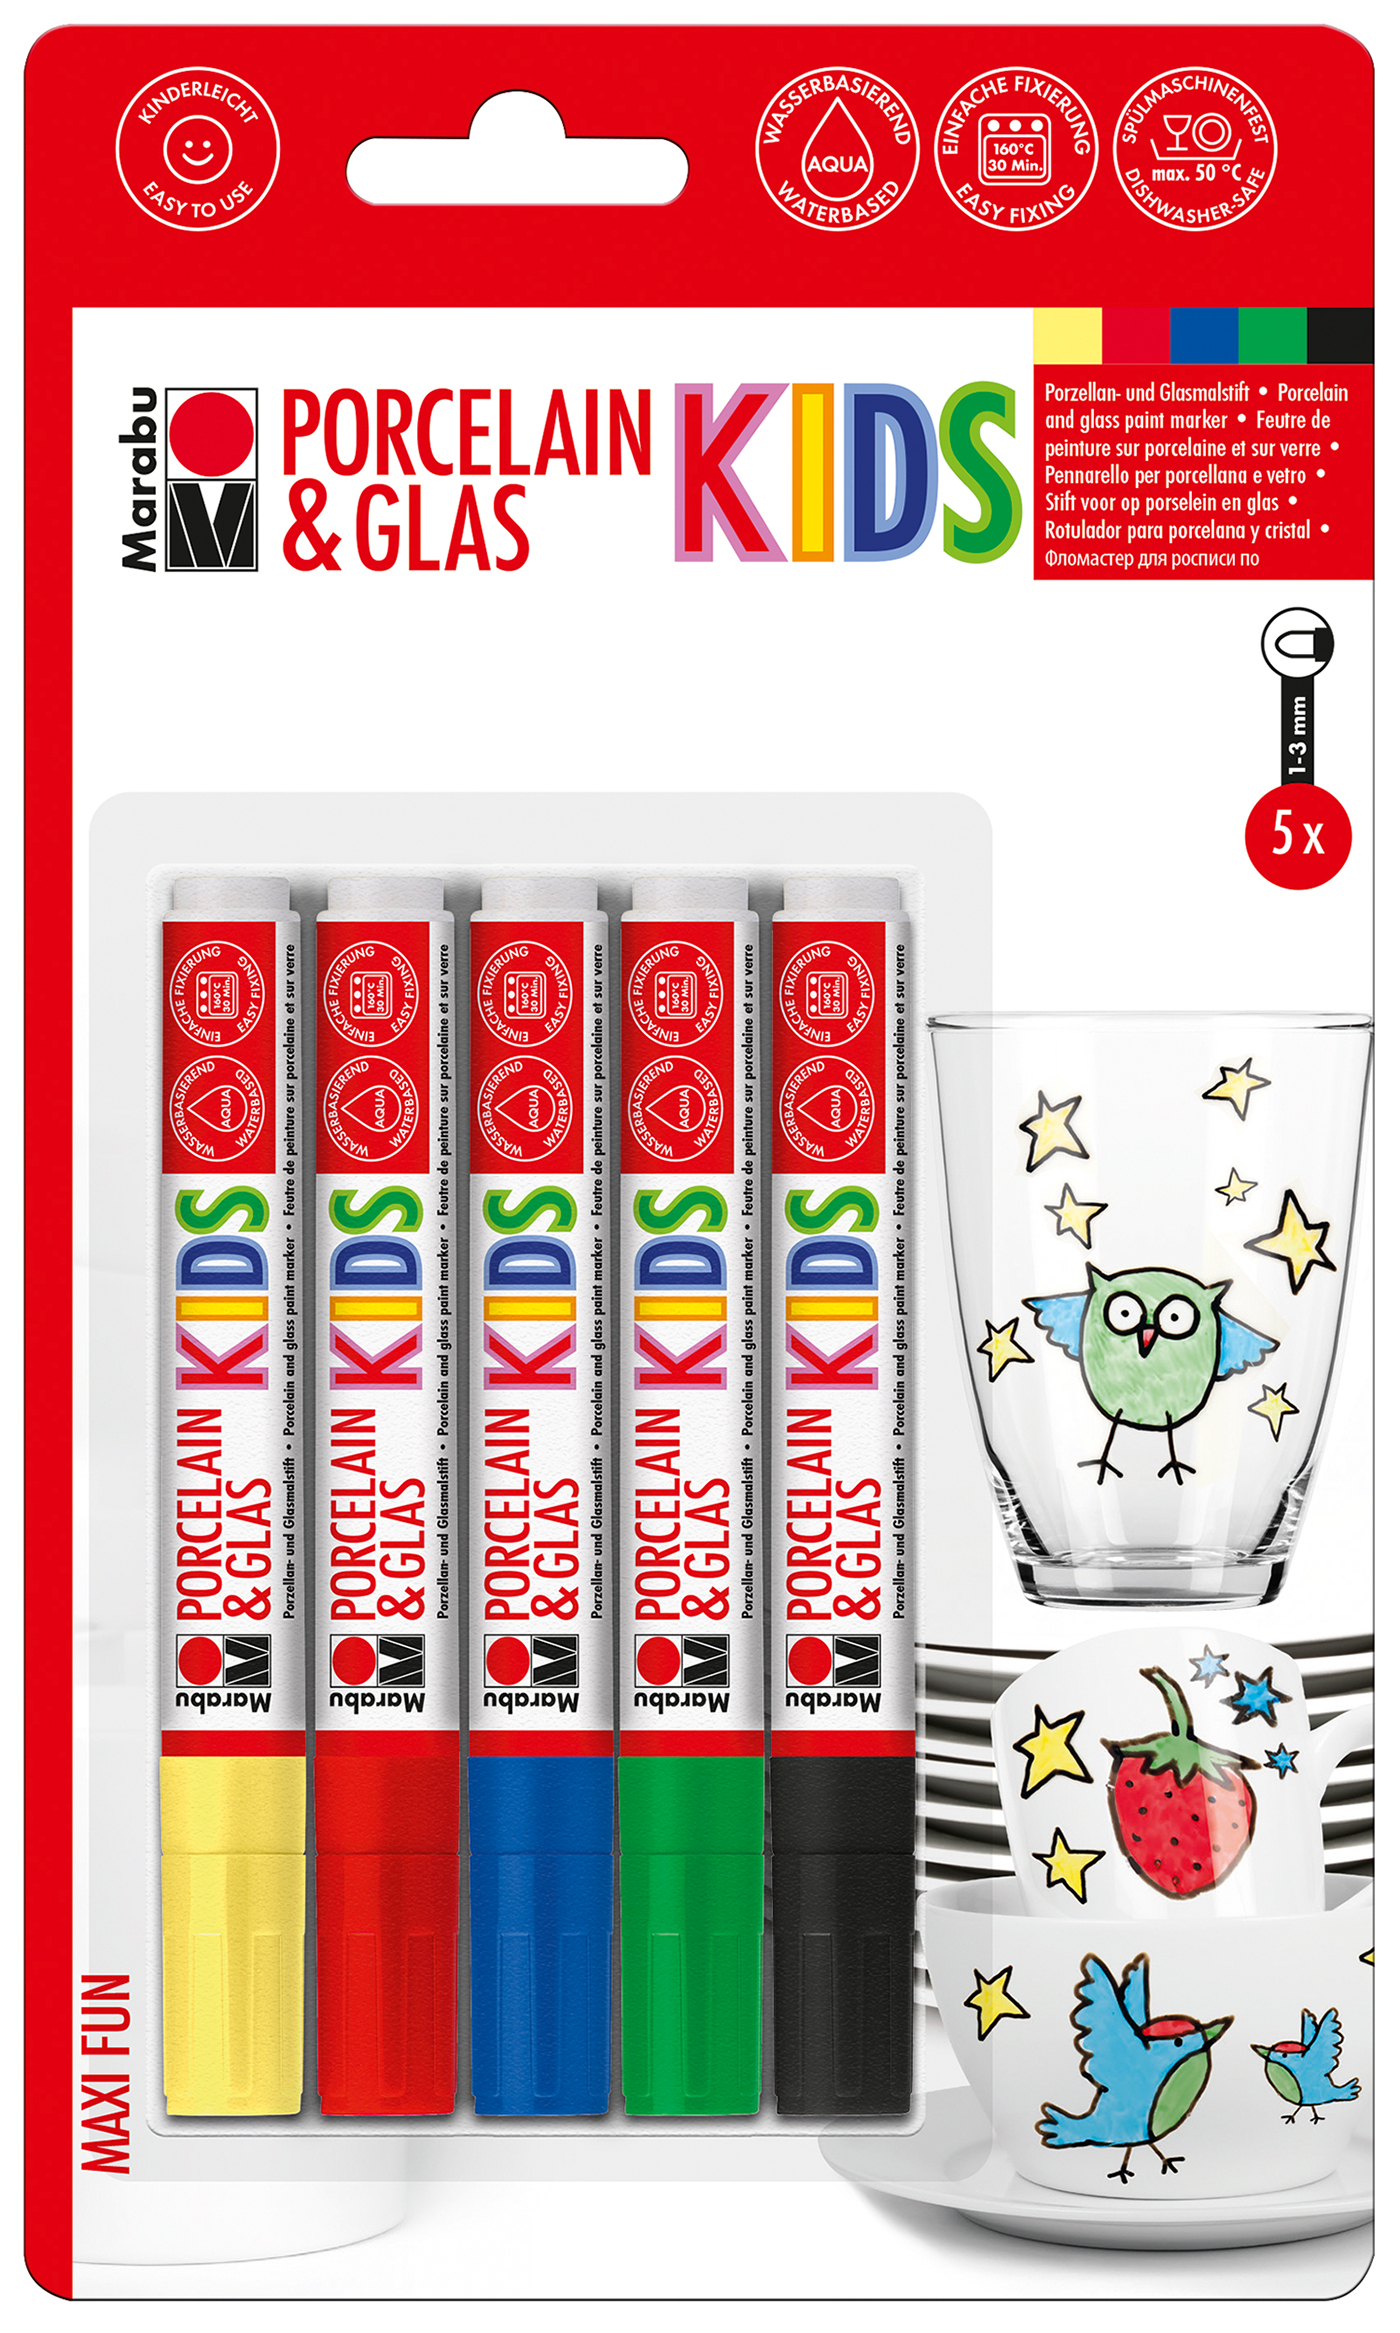 MARABU Kids Porzellan & Glas Stifte-Set 5 Stück mehrere Farben